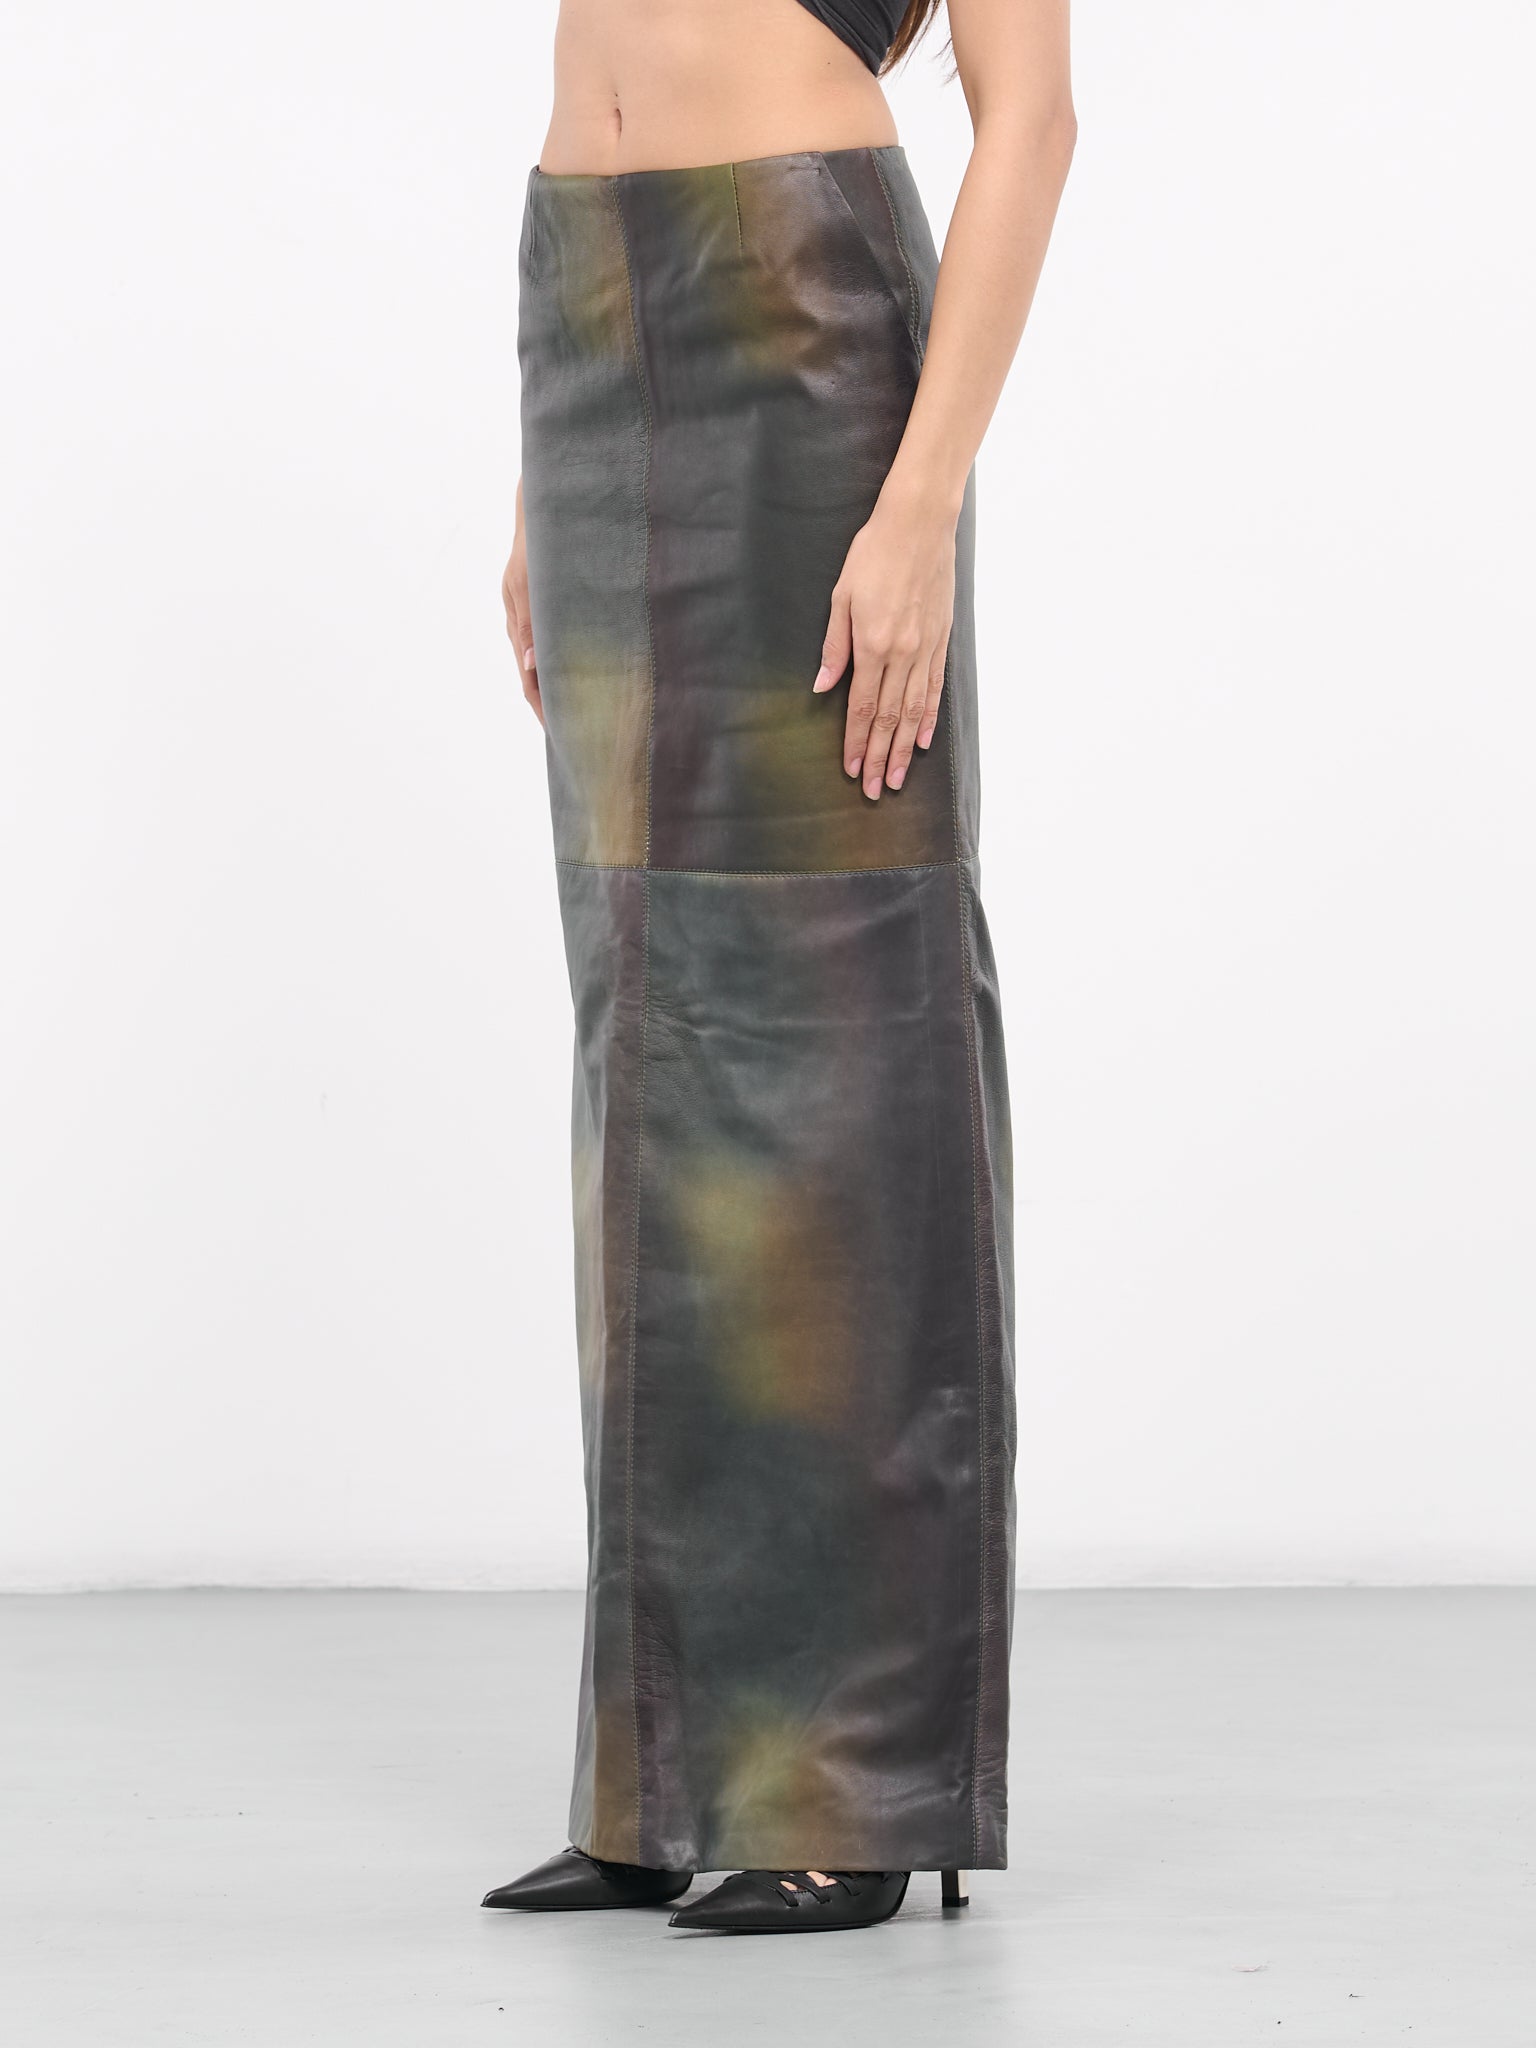 Printed Leather Skirt (SKIR-PRINT-01-PRINTED-DARK-GRE)